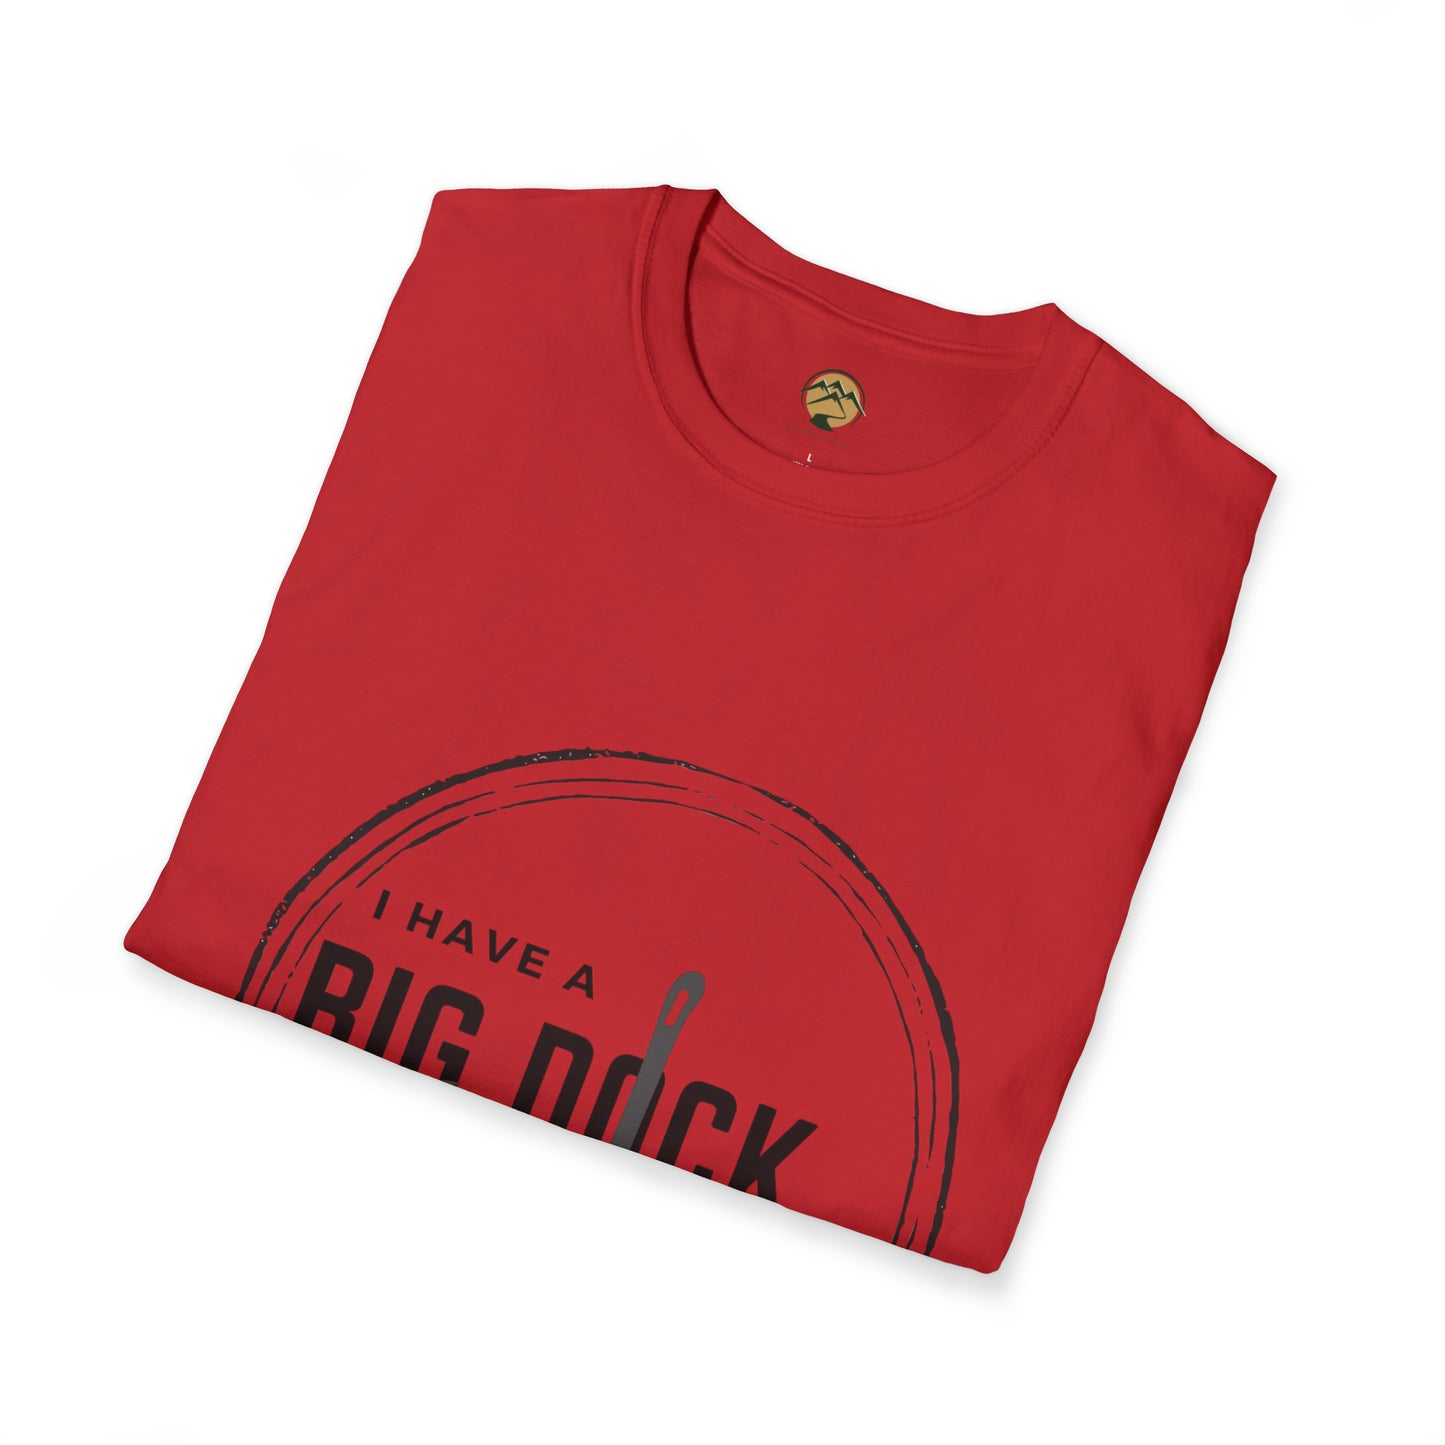 Big Dock Unisex Softstyle T-Shirt